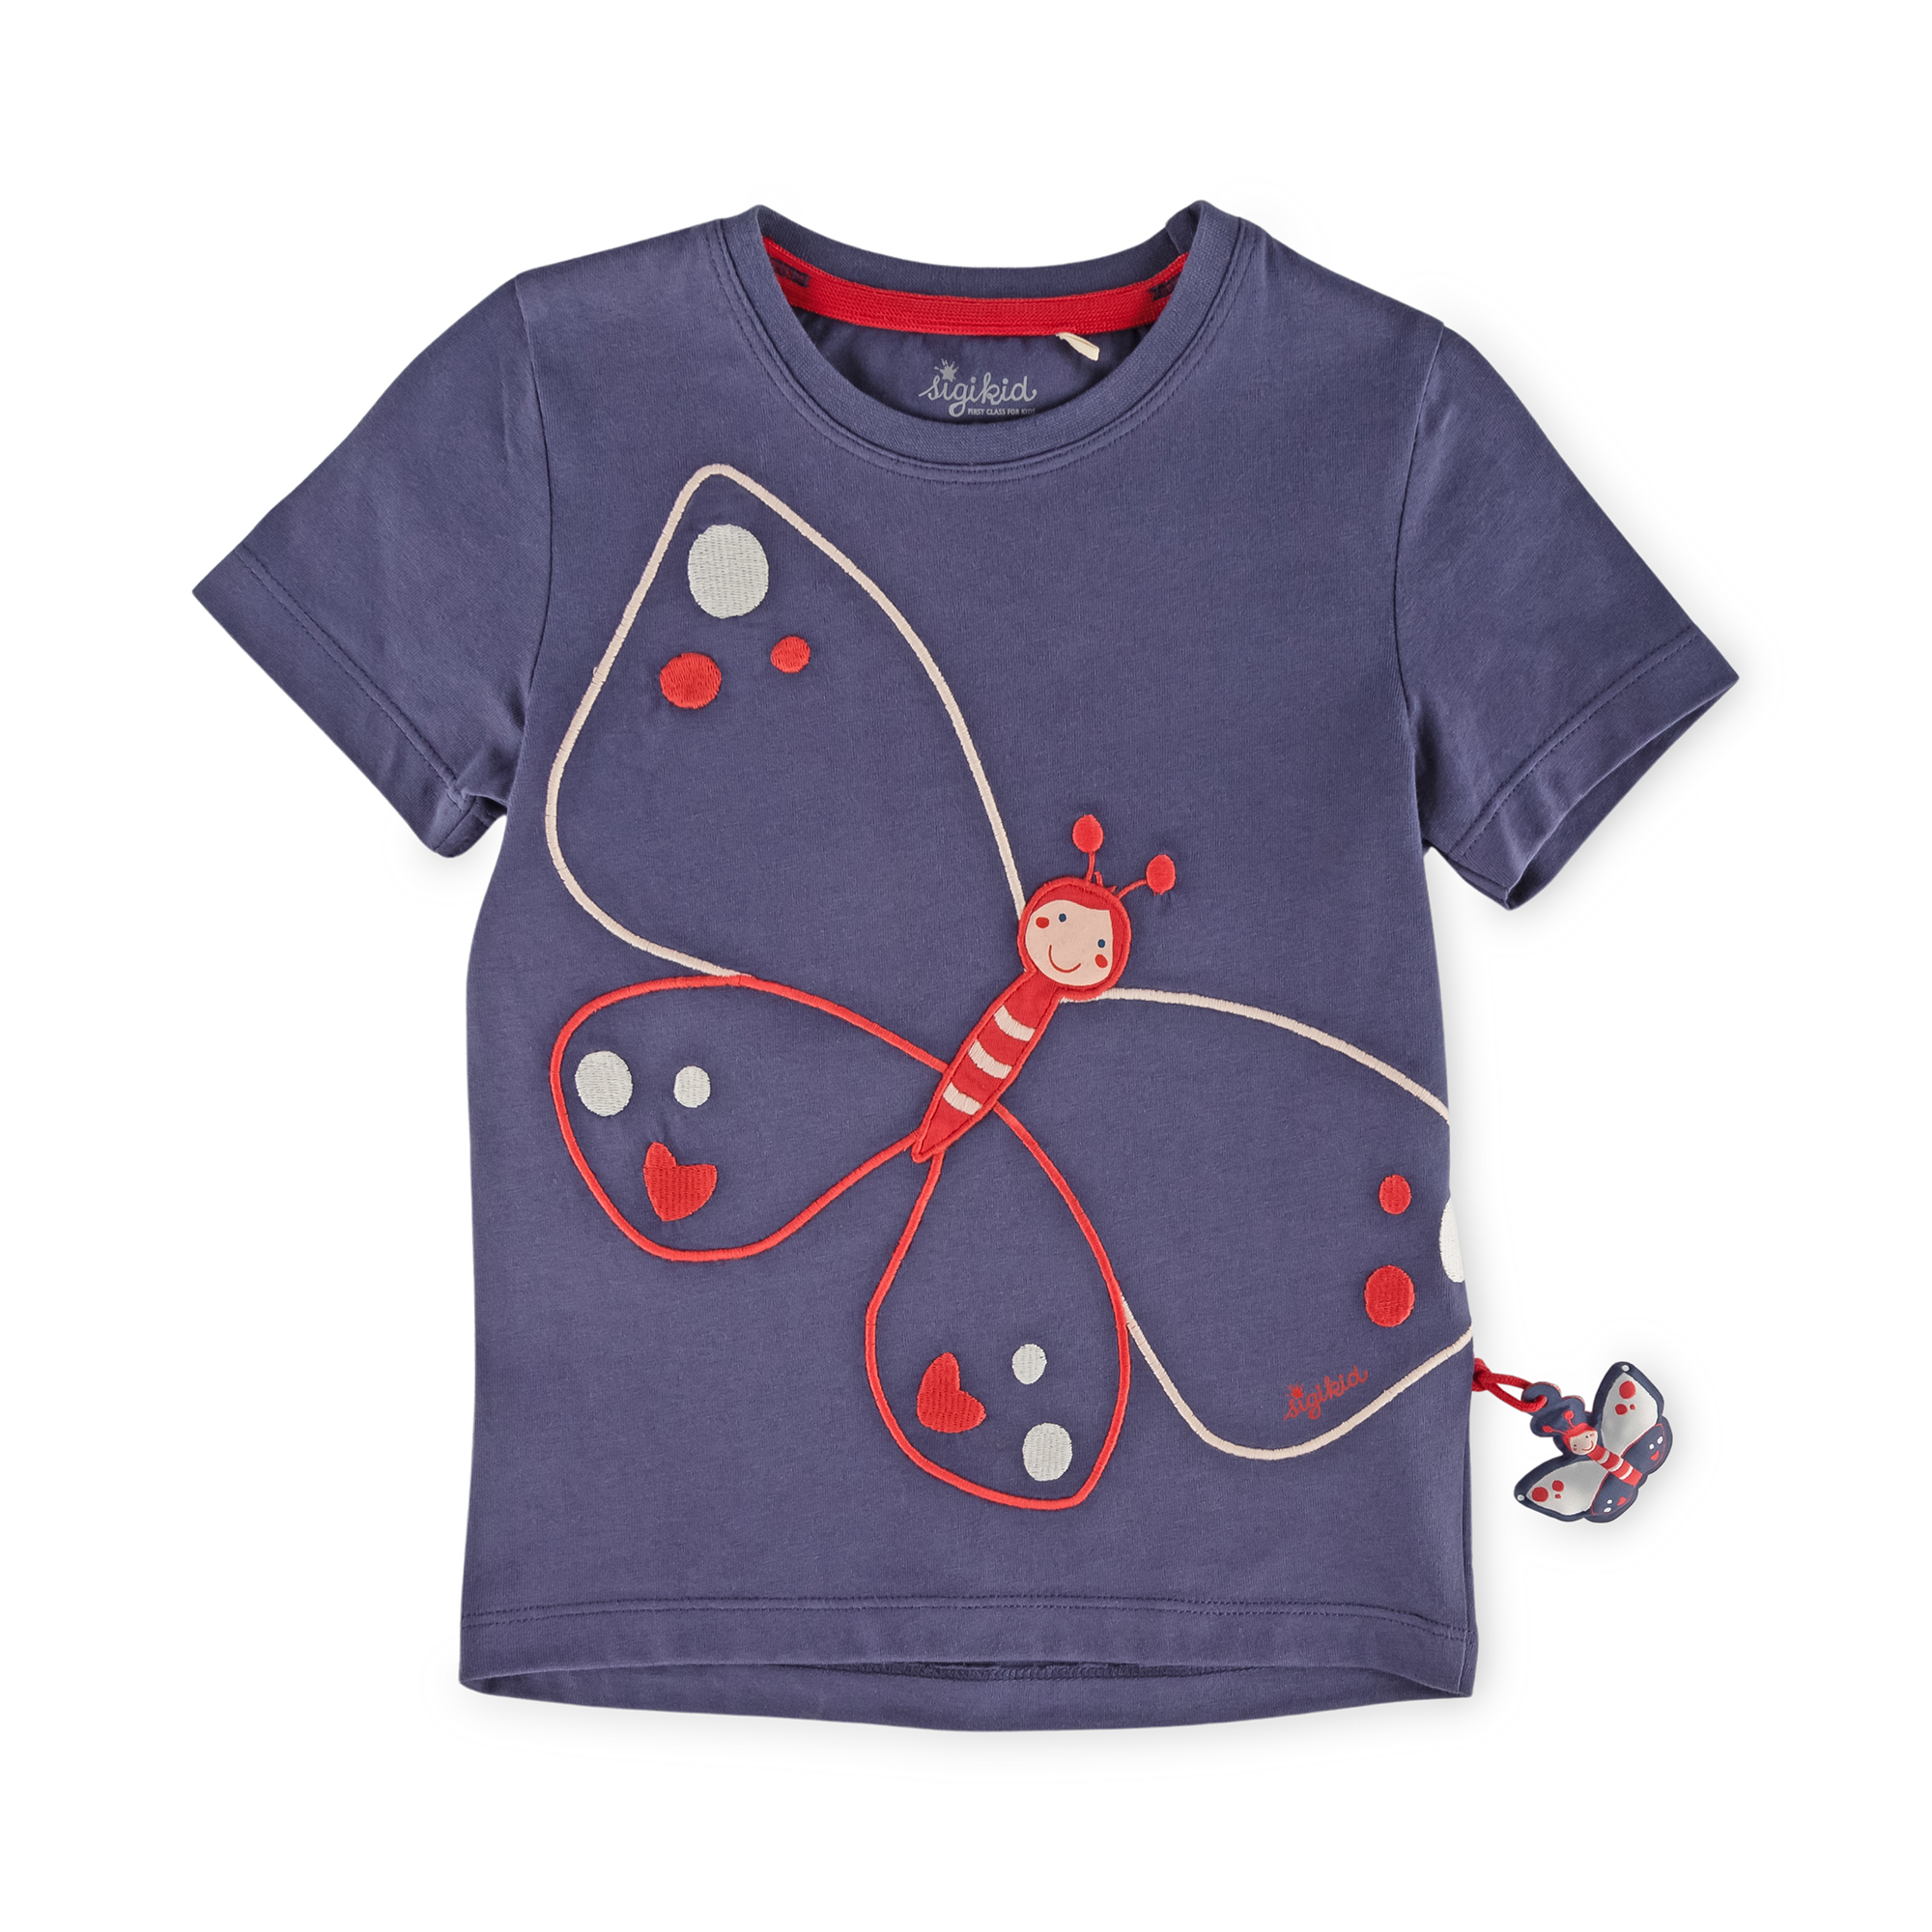 Kinder T-Shirt mit Schmetterling Motiv, blau